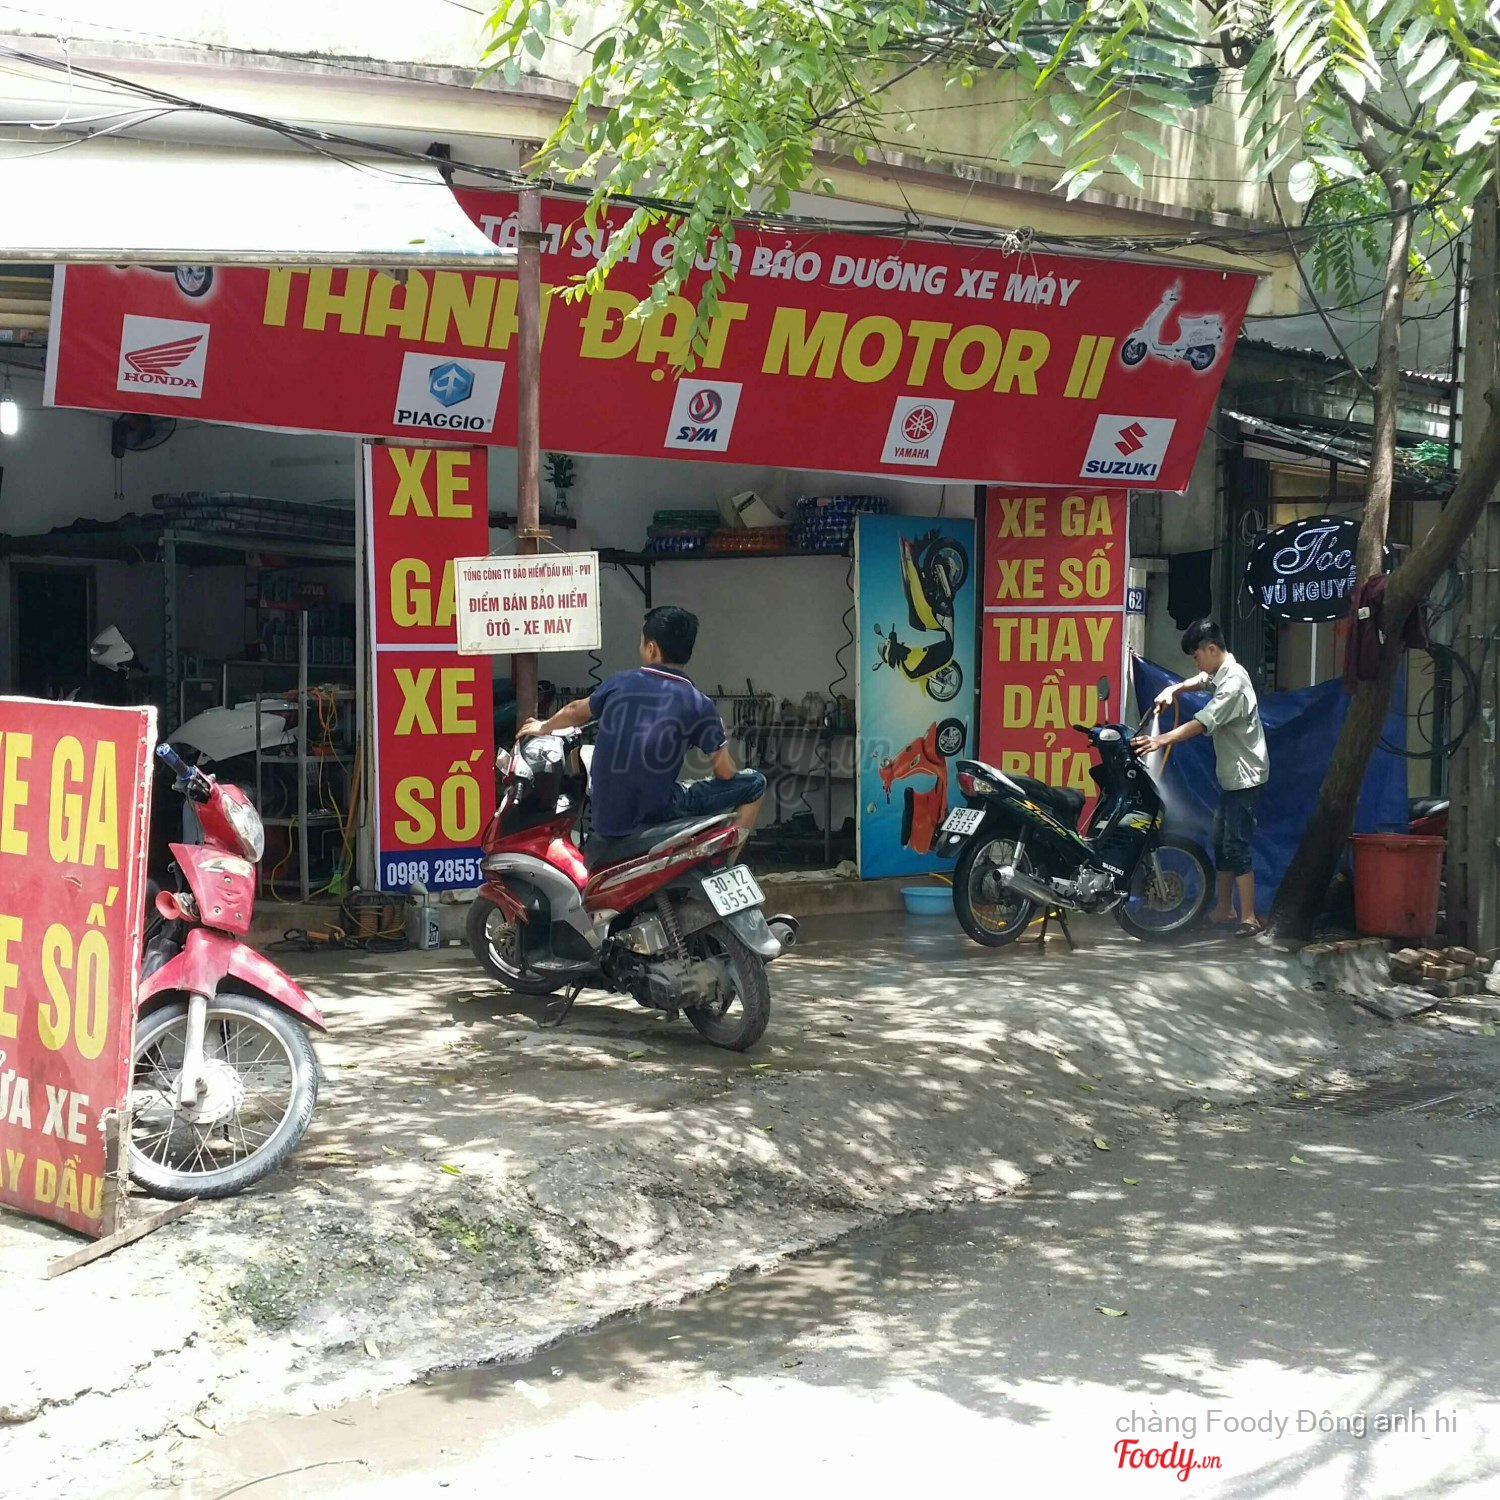 Thành Đạt Motor - Sửa Chữa Xe Máy Ở Quận Cầu Giấy, Hà Nội | Album Tổng Hợp  | Thành Đạt Motor - Sửa Chữa Xe Máy | Foody.Vn